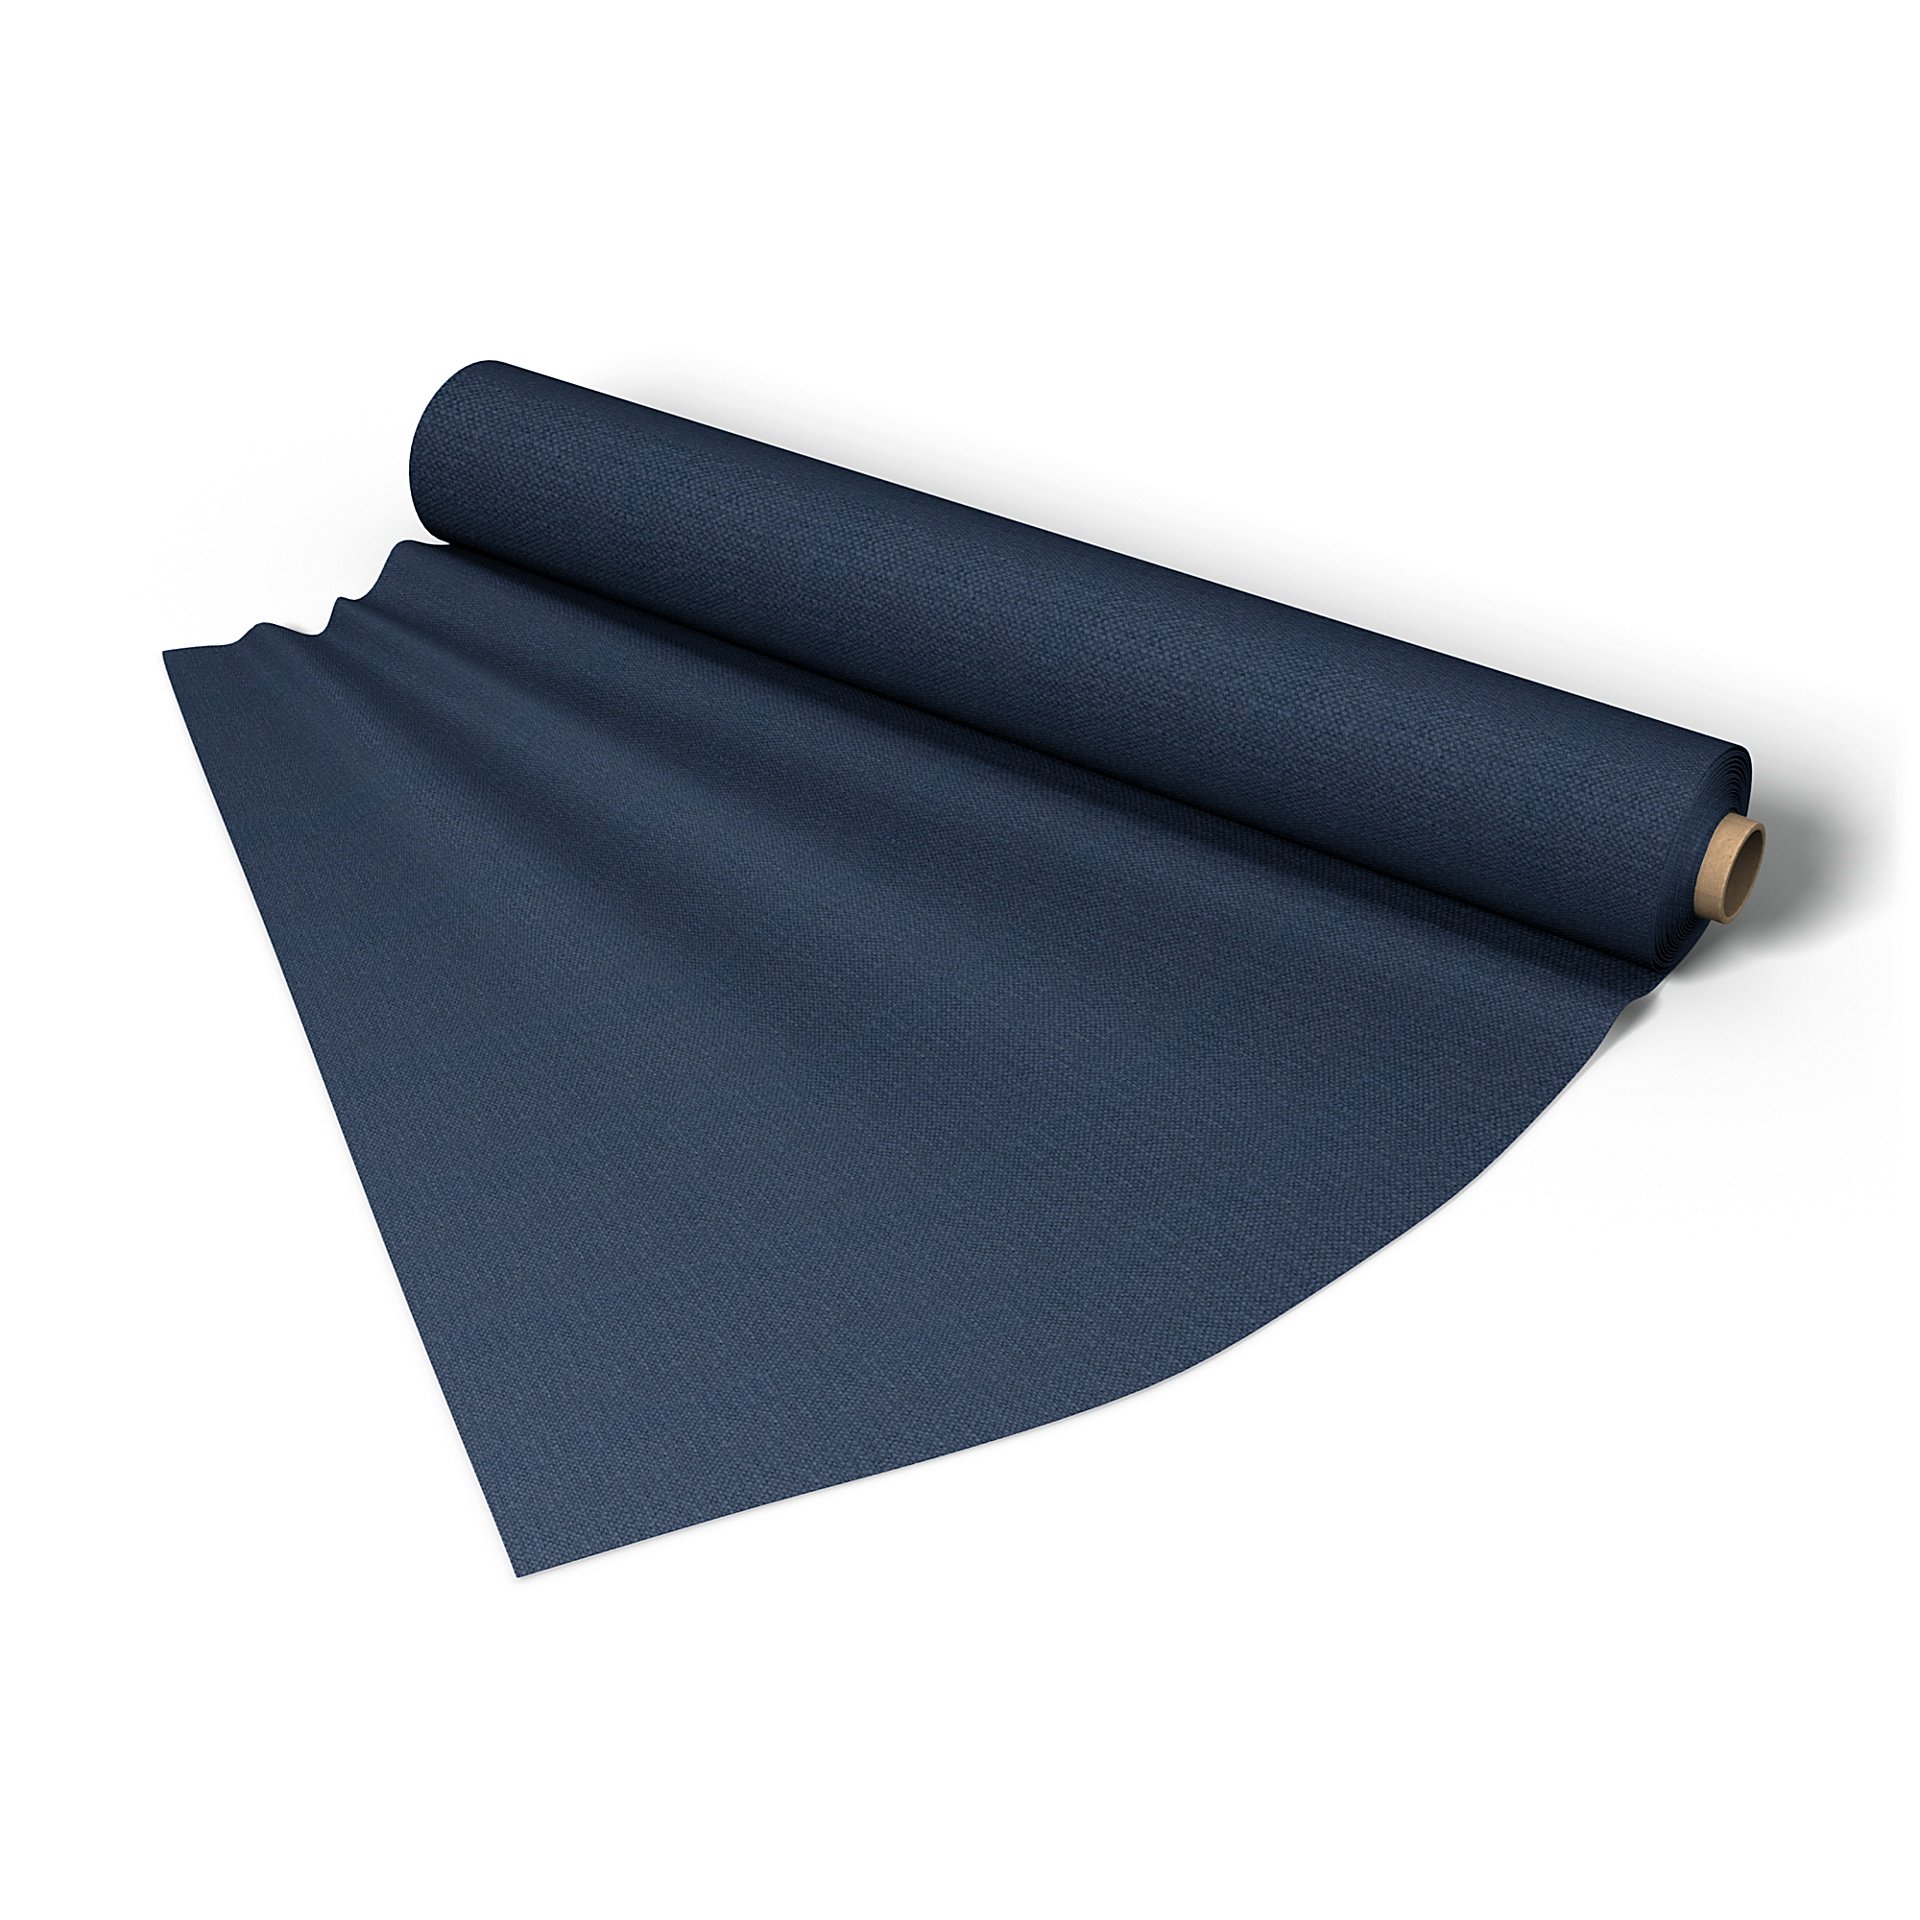 Fabric per metre, Navy Blue, Linen - Bemz